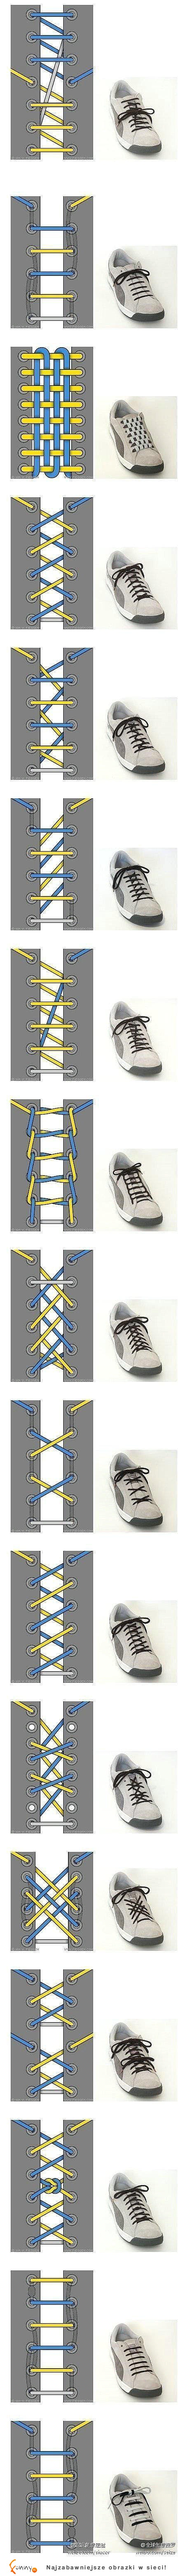 super patenty na wiązanie butów! sprawdź jak w oryginalny sposób zawiązać sznurówki!